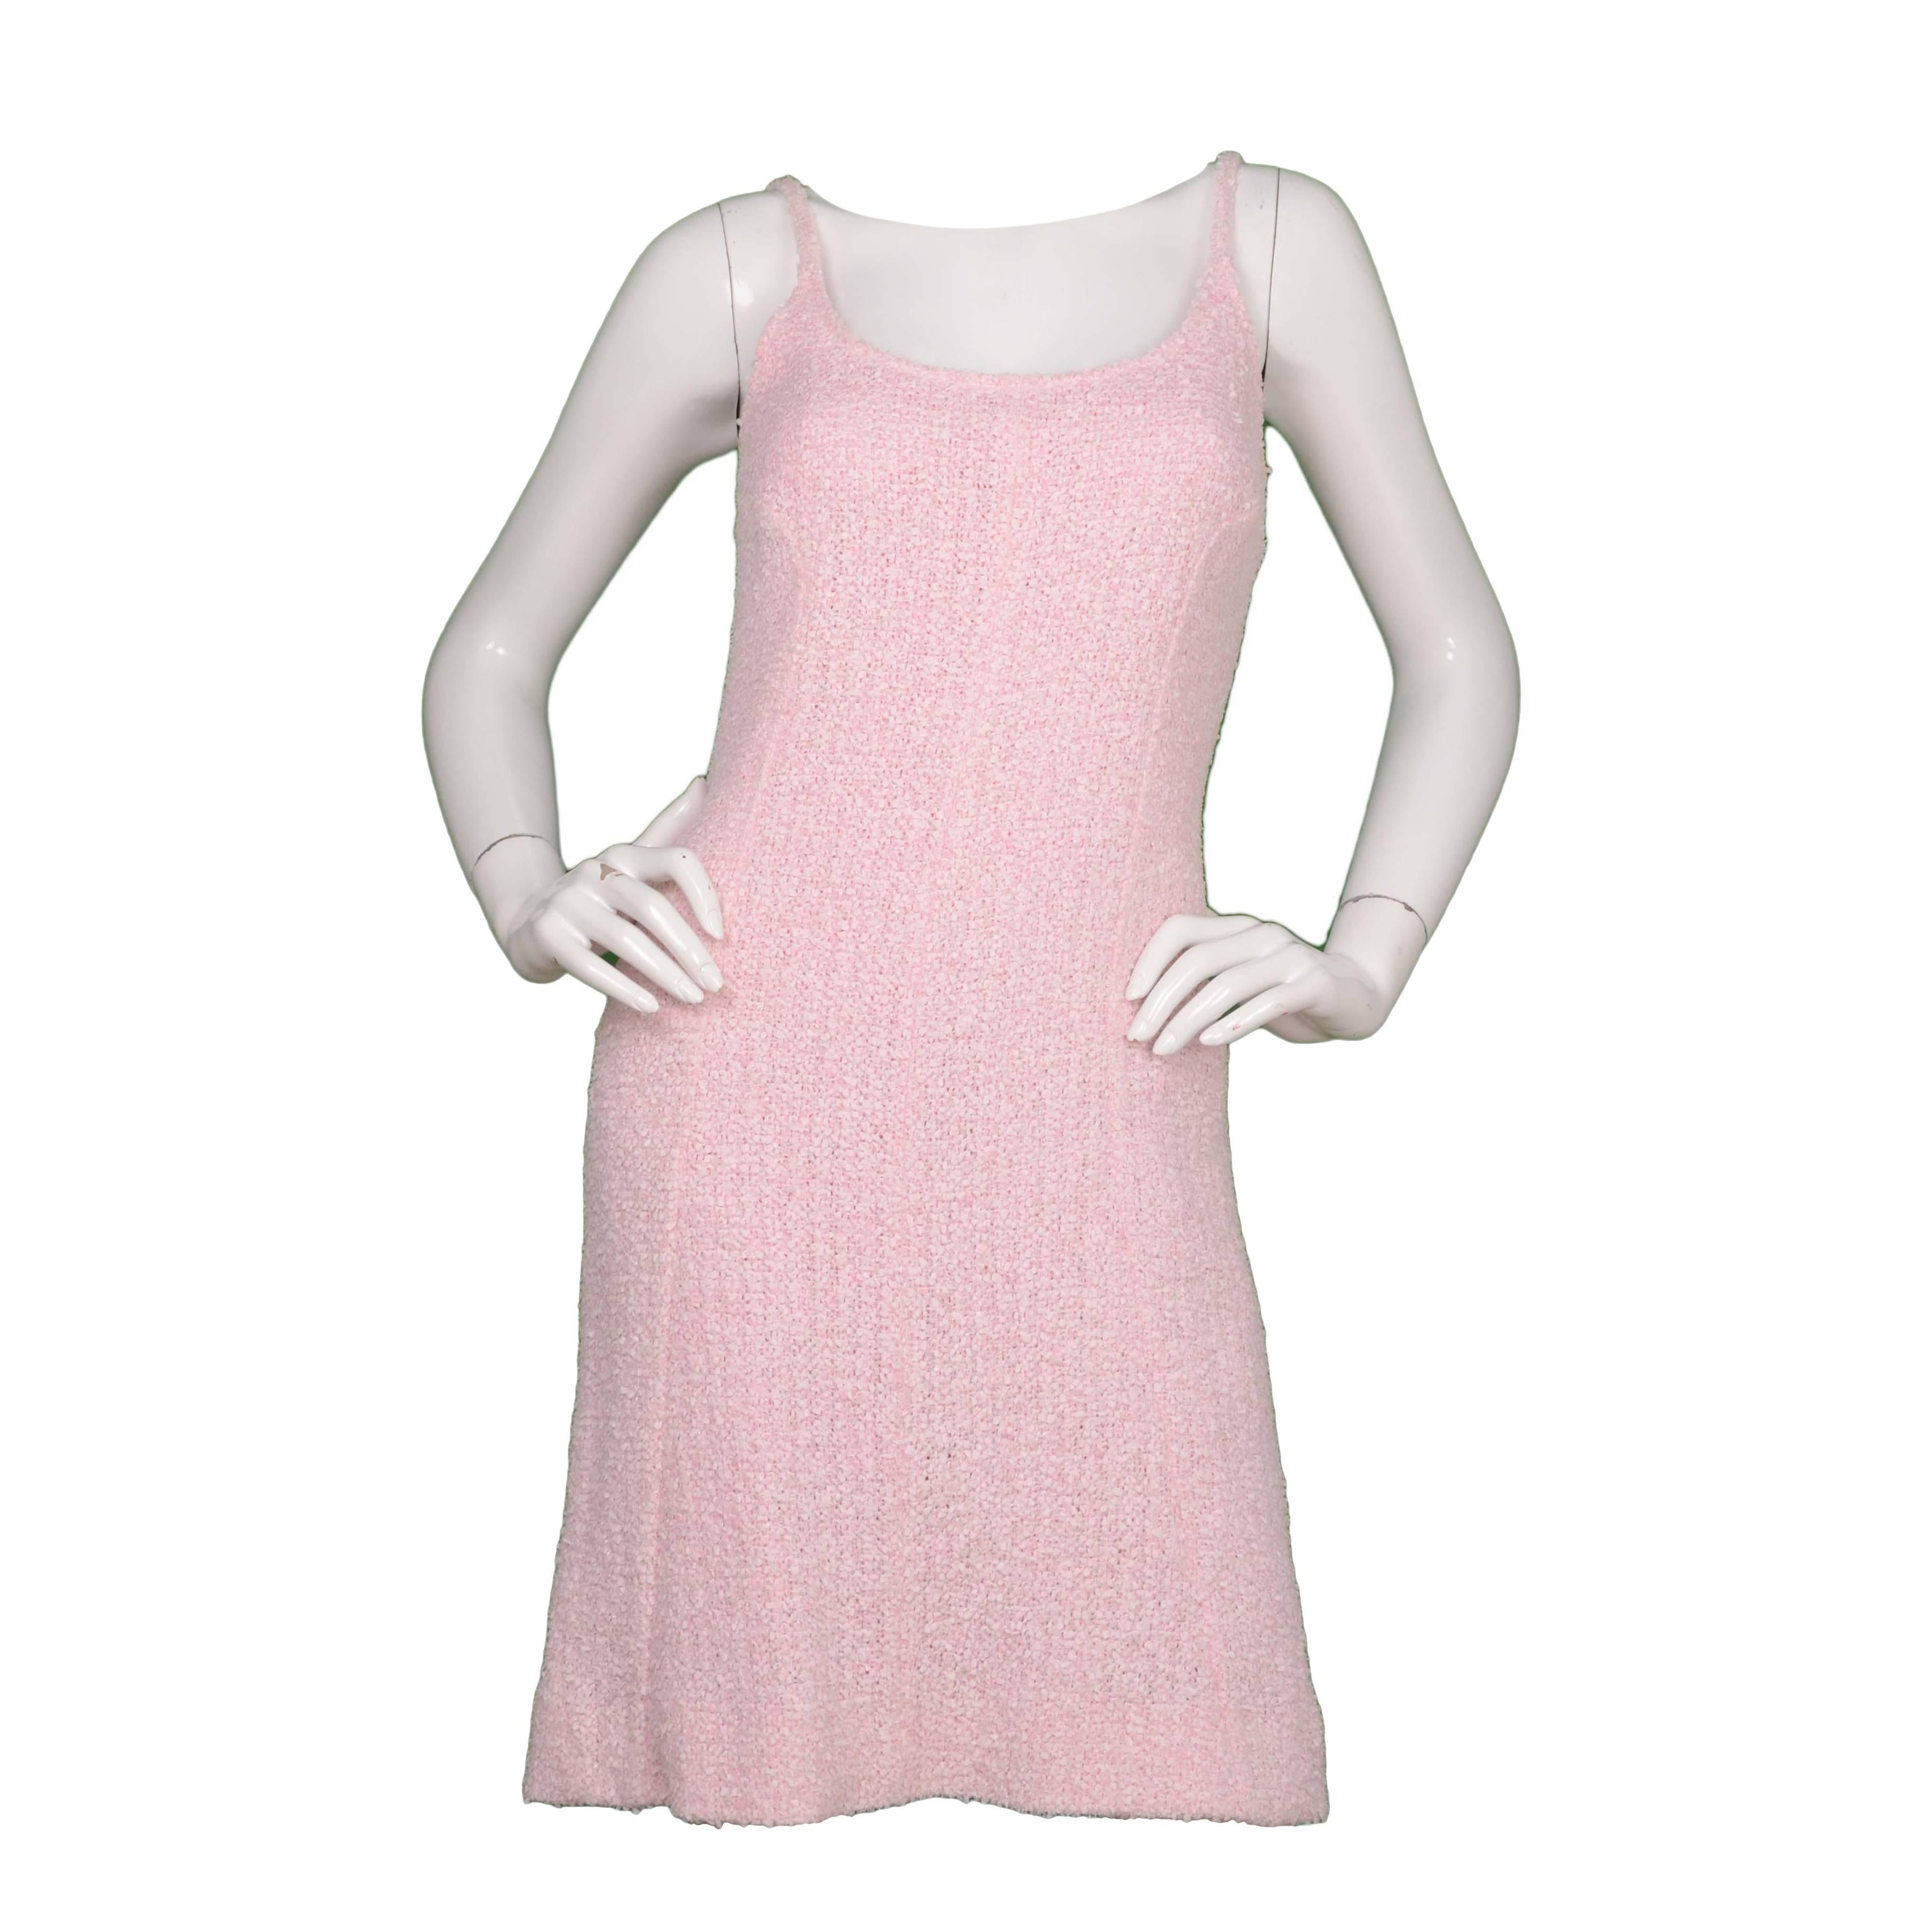 Chanel Pink Boucle Spaghetti Strap Dress sz 40